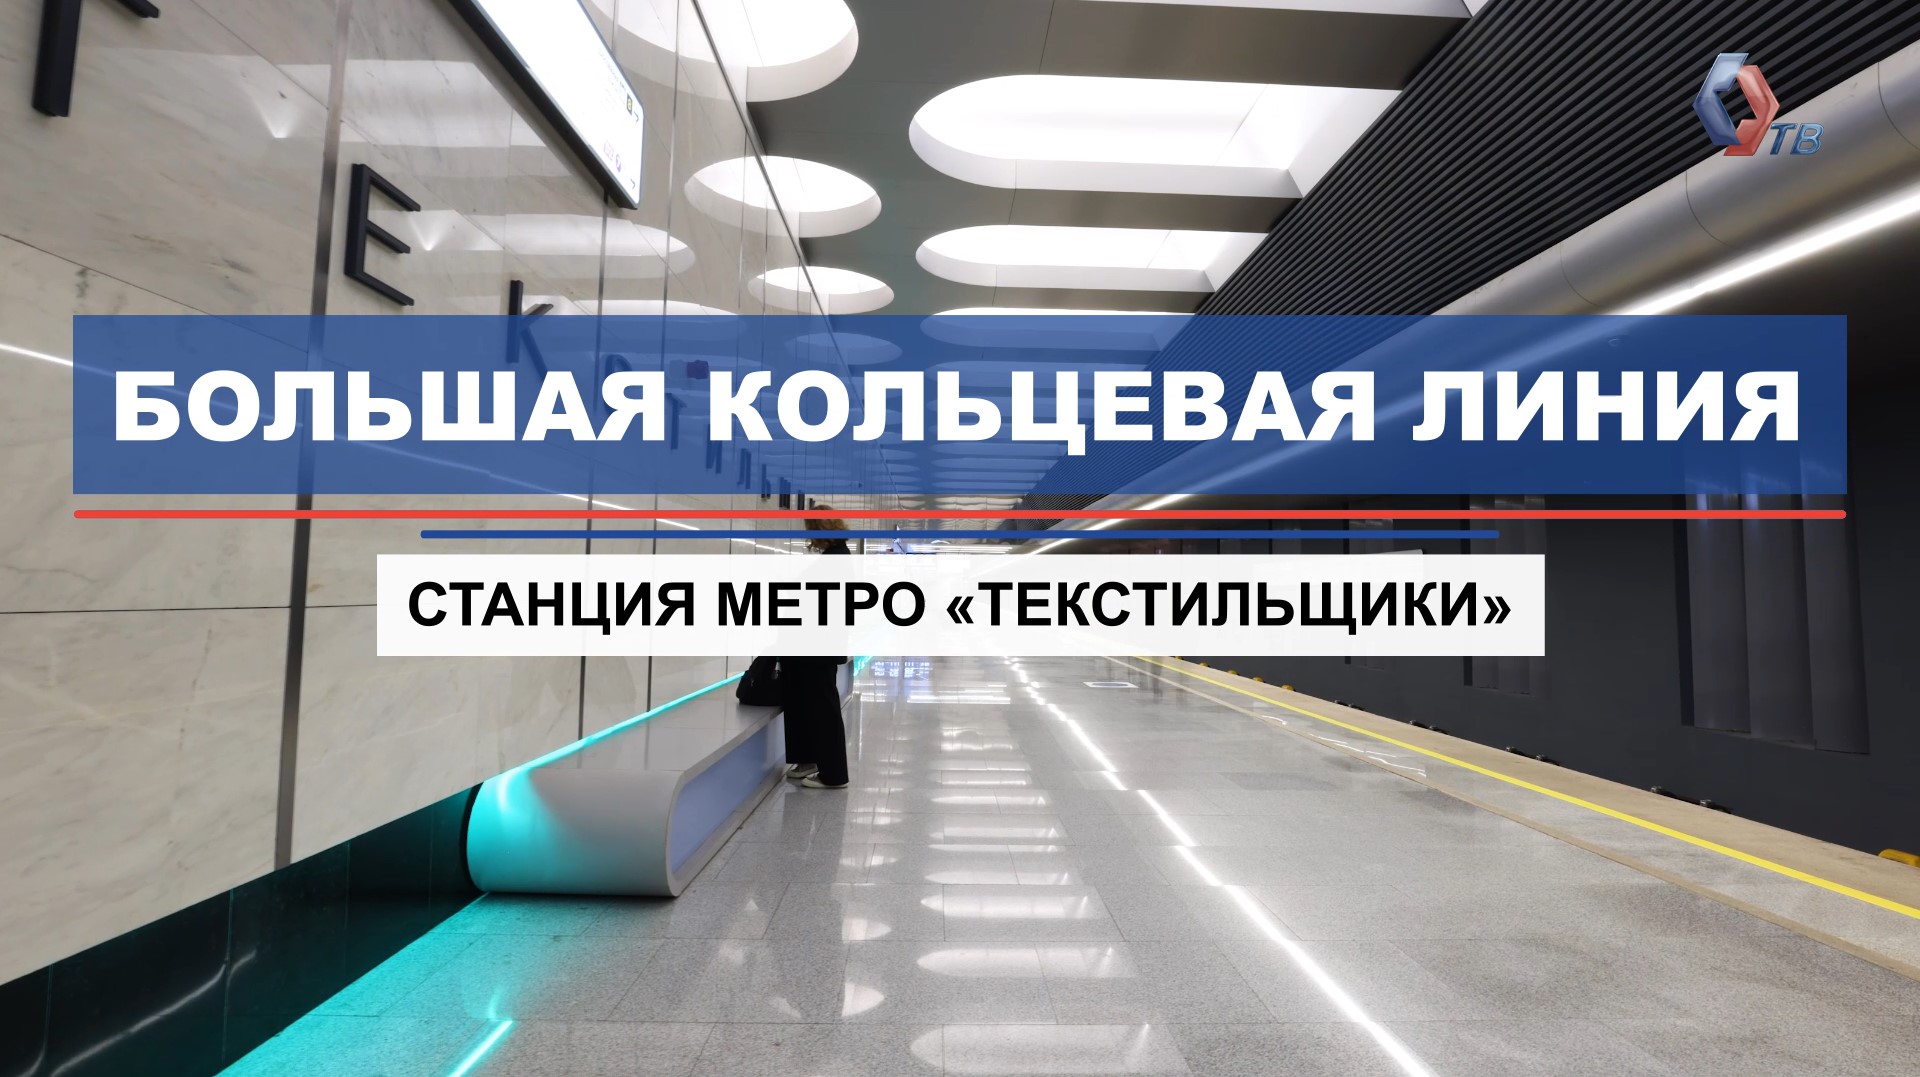 На станции «Текстильщики» БКЛ метро начался монтаж главного пролета моста для пересадки